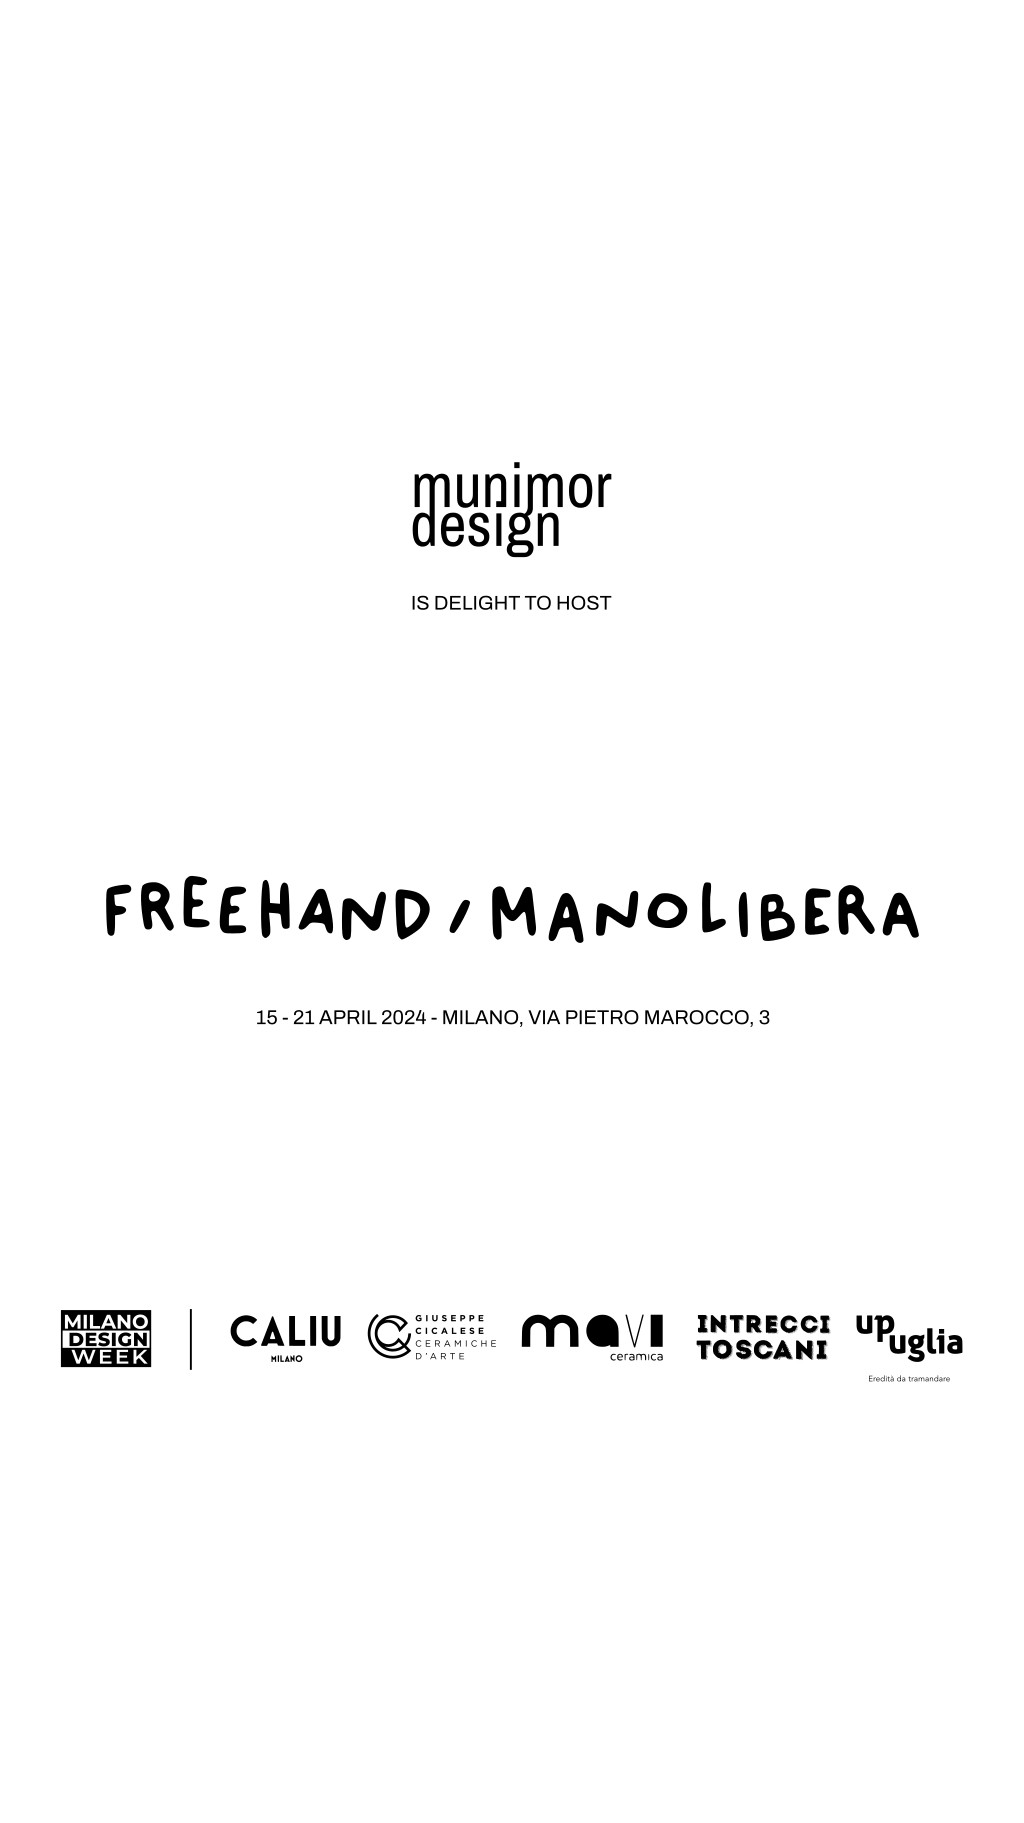 Milano Design Week 2024 | FREEHAND / MANOLIBERA